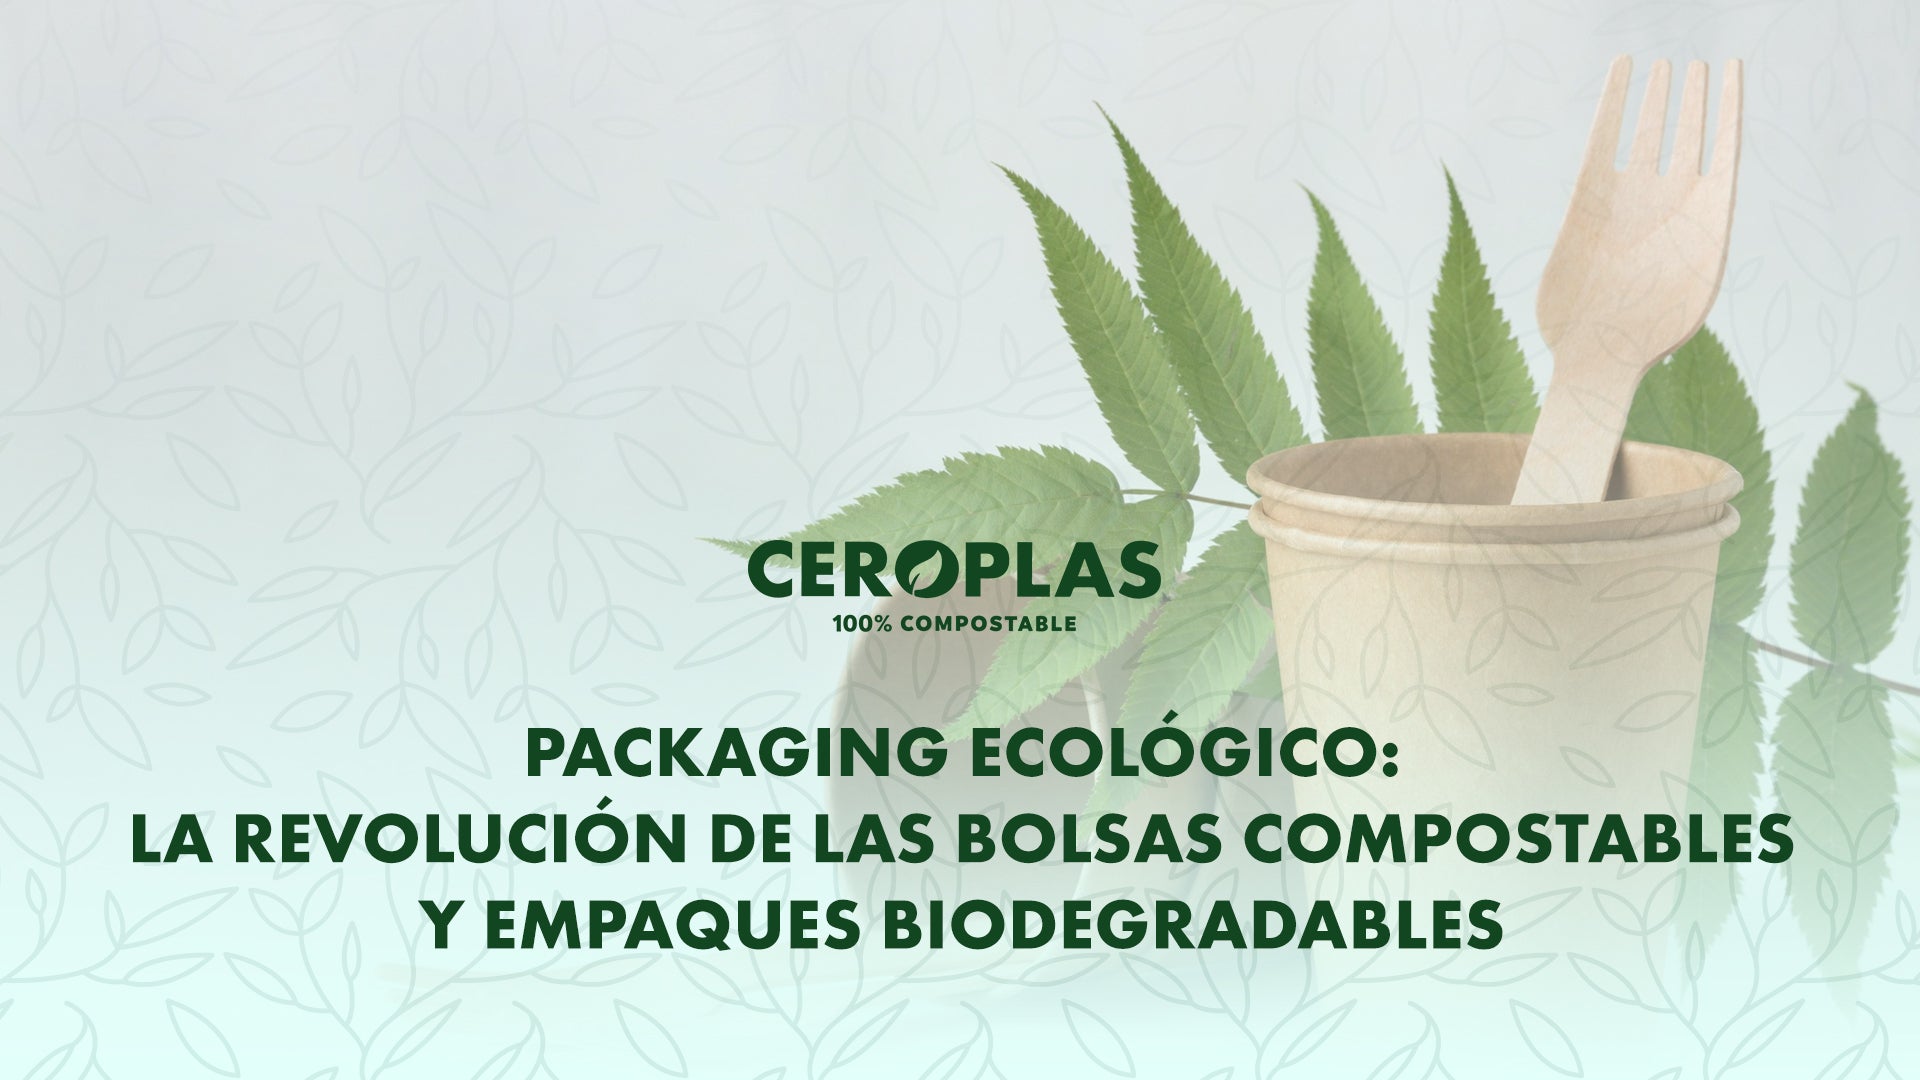 Packaging Ecológico: La revolución de las bolsas compostables y empaques biodegradables